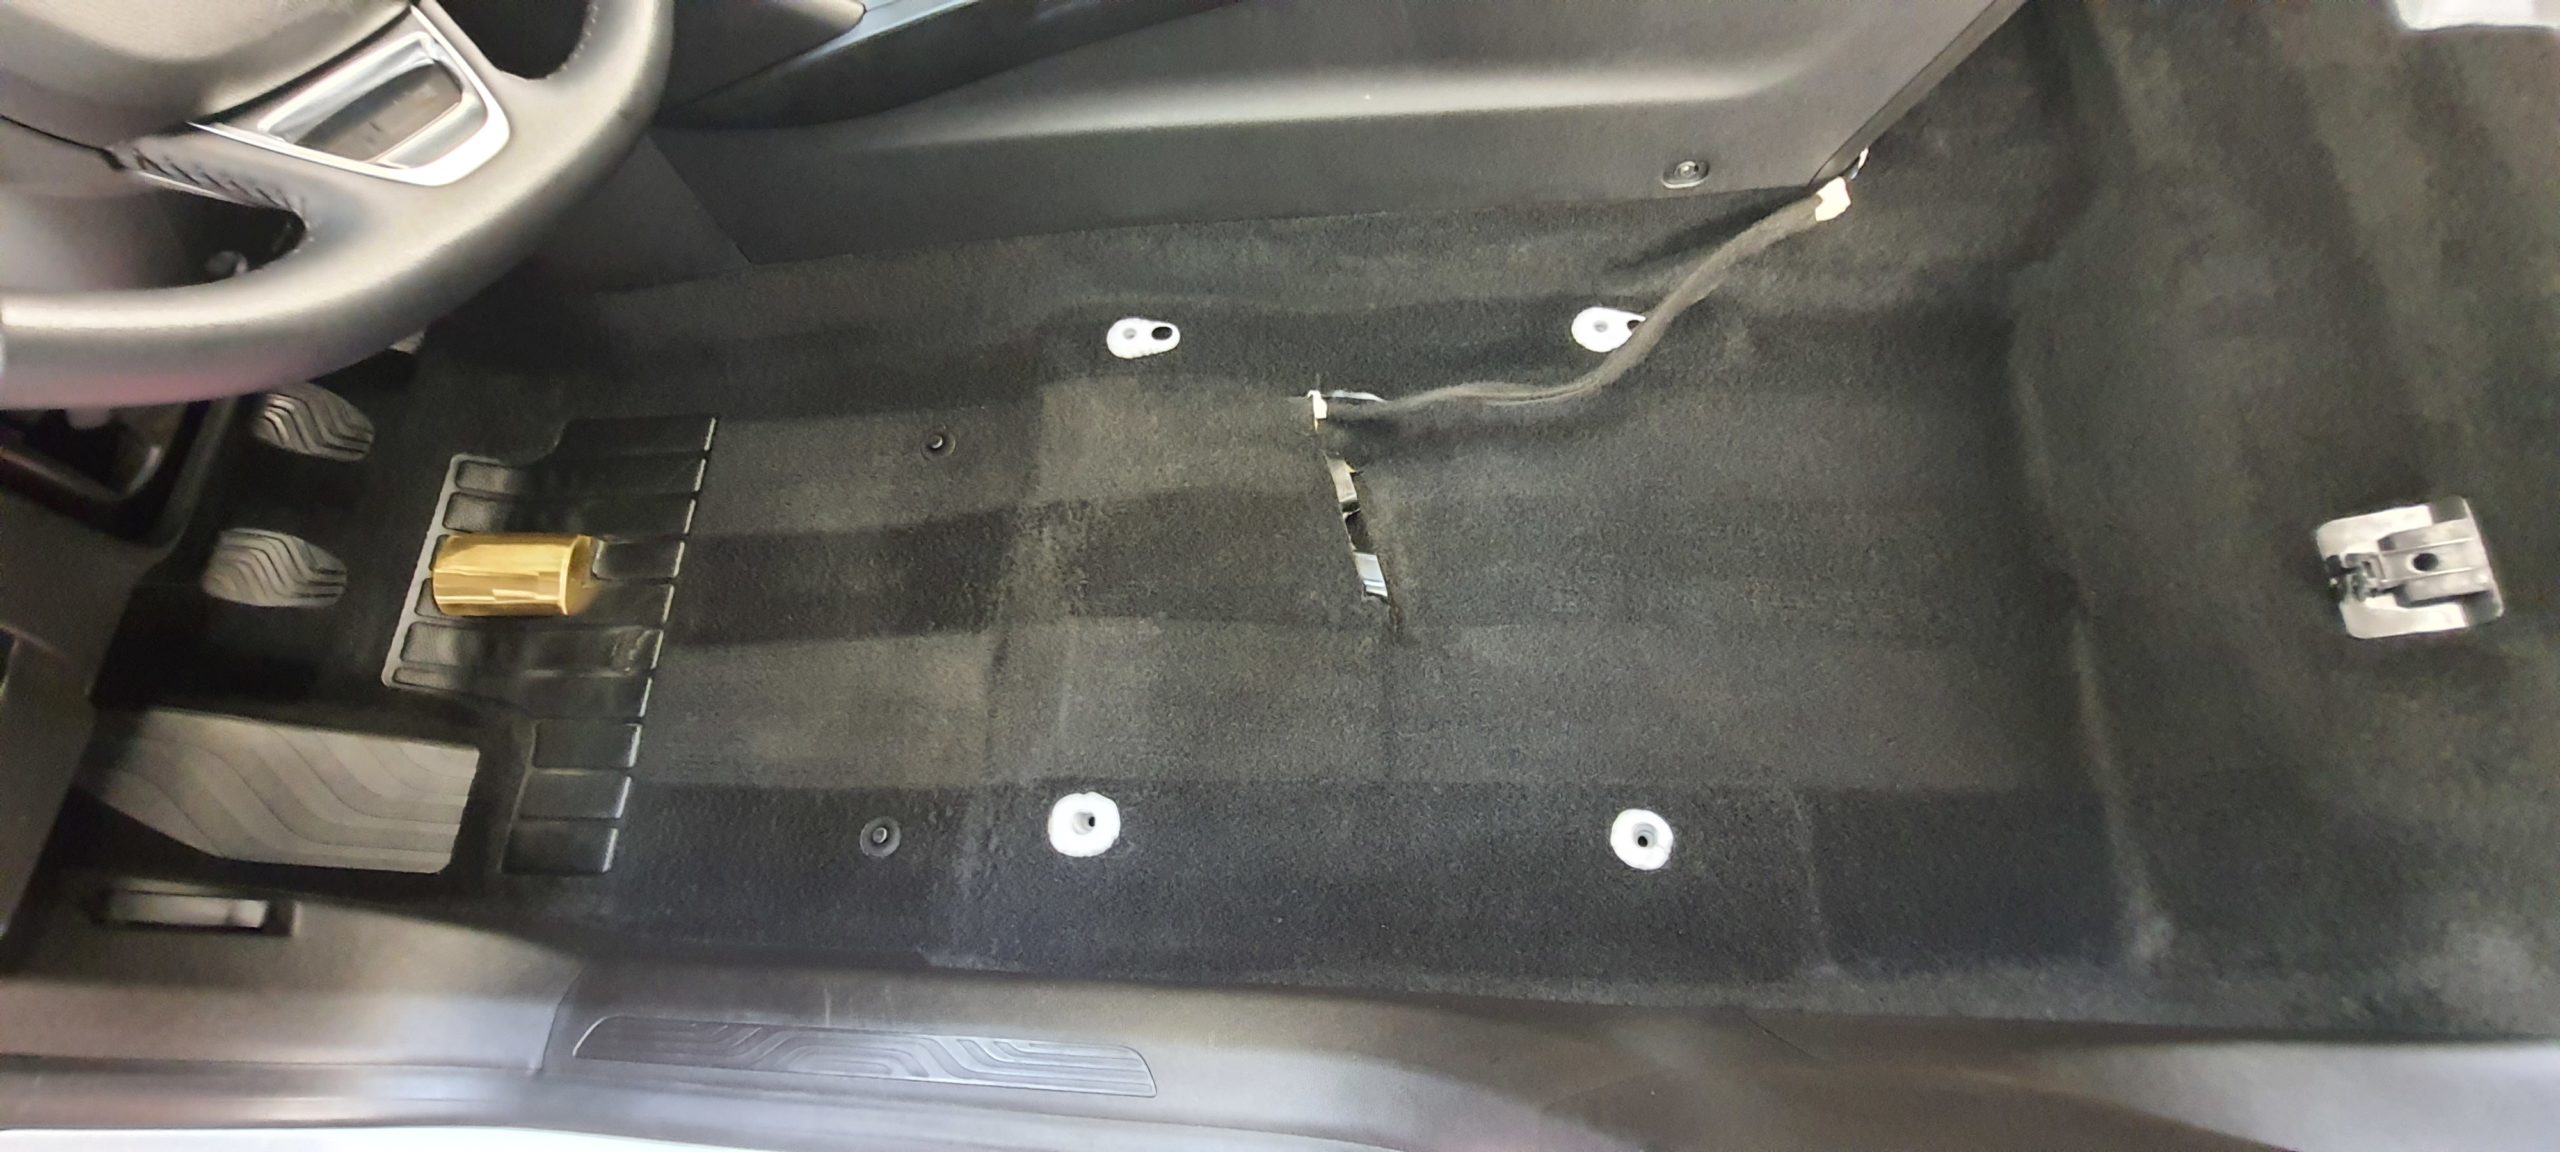 Nettoyage intérieur et extérieur avec formule Nettoyage des tissus/cuirs sur Renault Mégane avec dépose des sièges pour un nettoyage optimal avant restitution du véhicule chez Renault